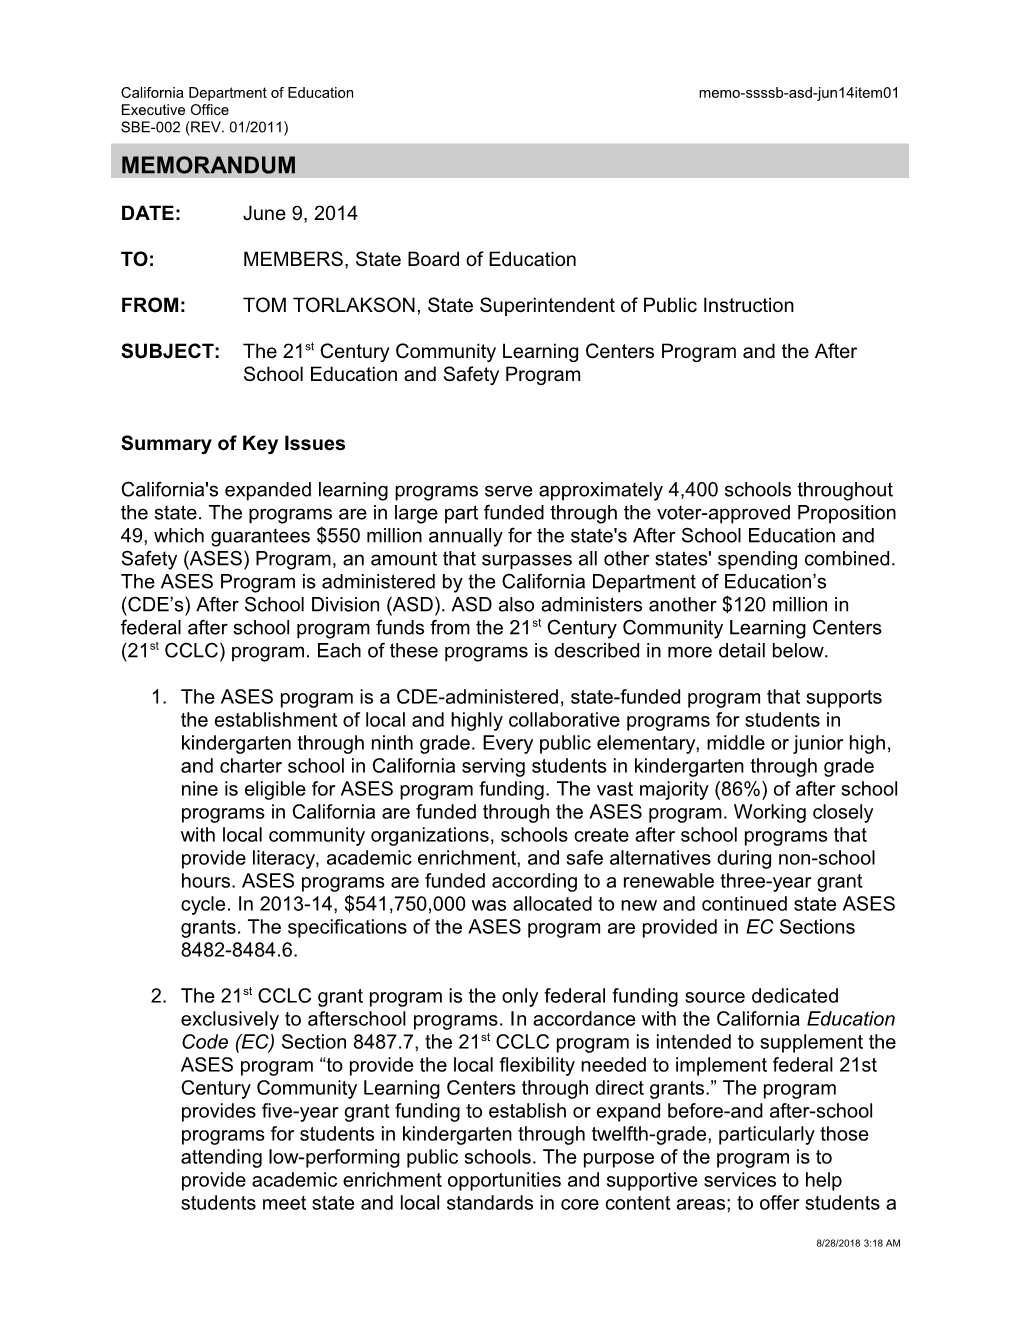 June 2014 Memorandum ASD Item 01 - Information Memorandum (CA State Board of Education)